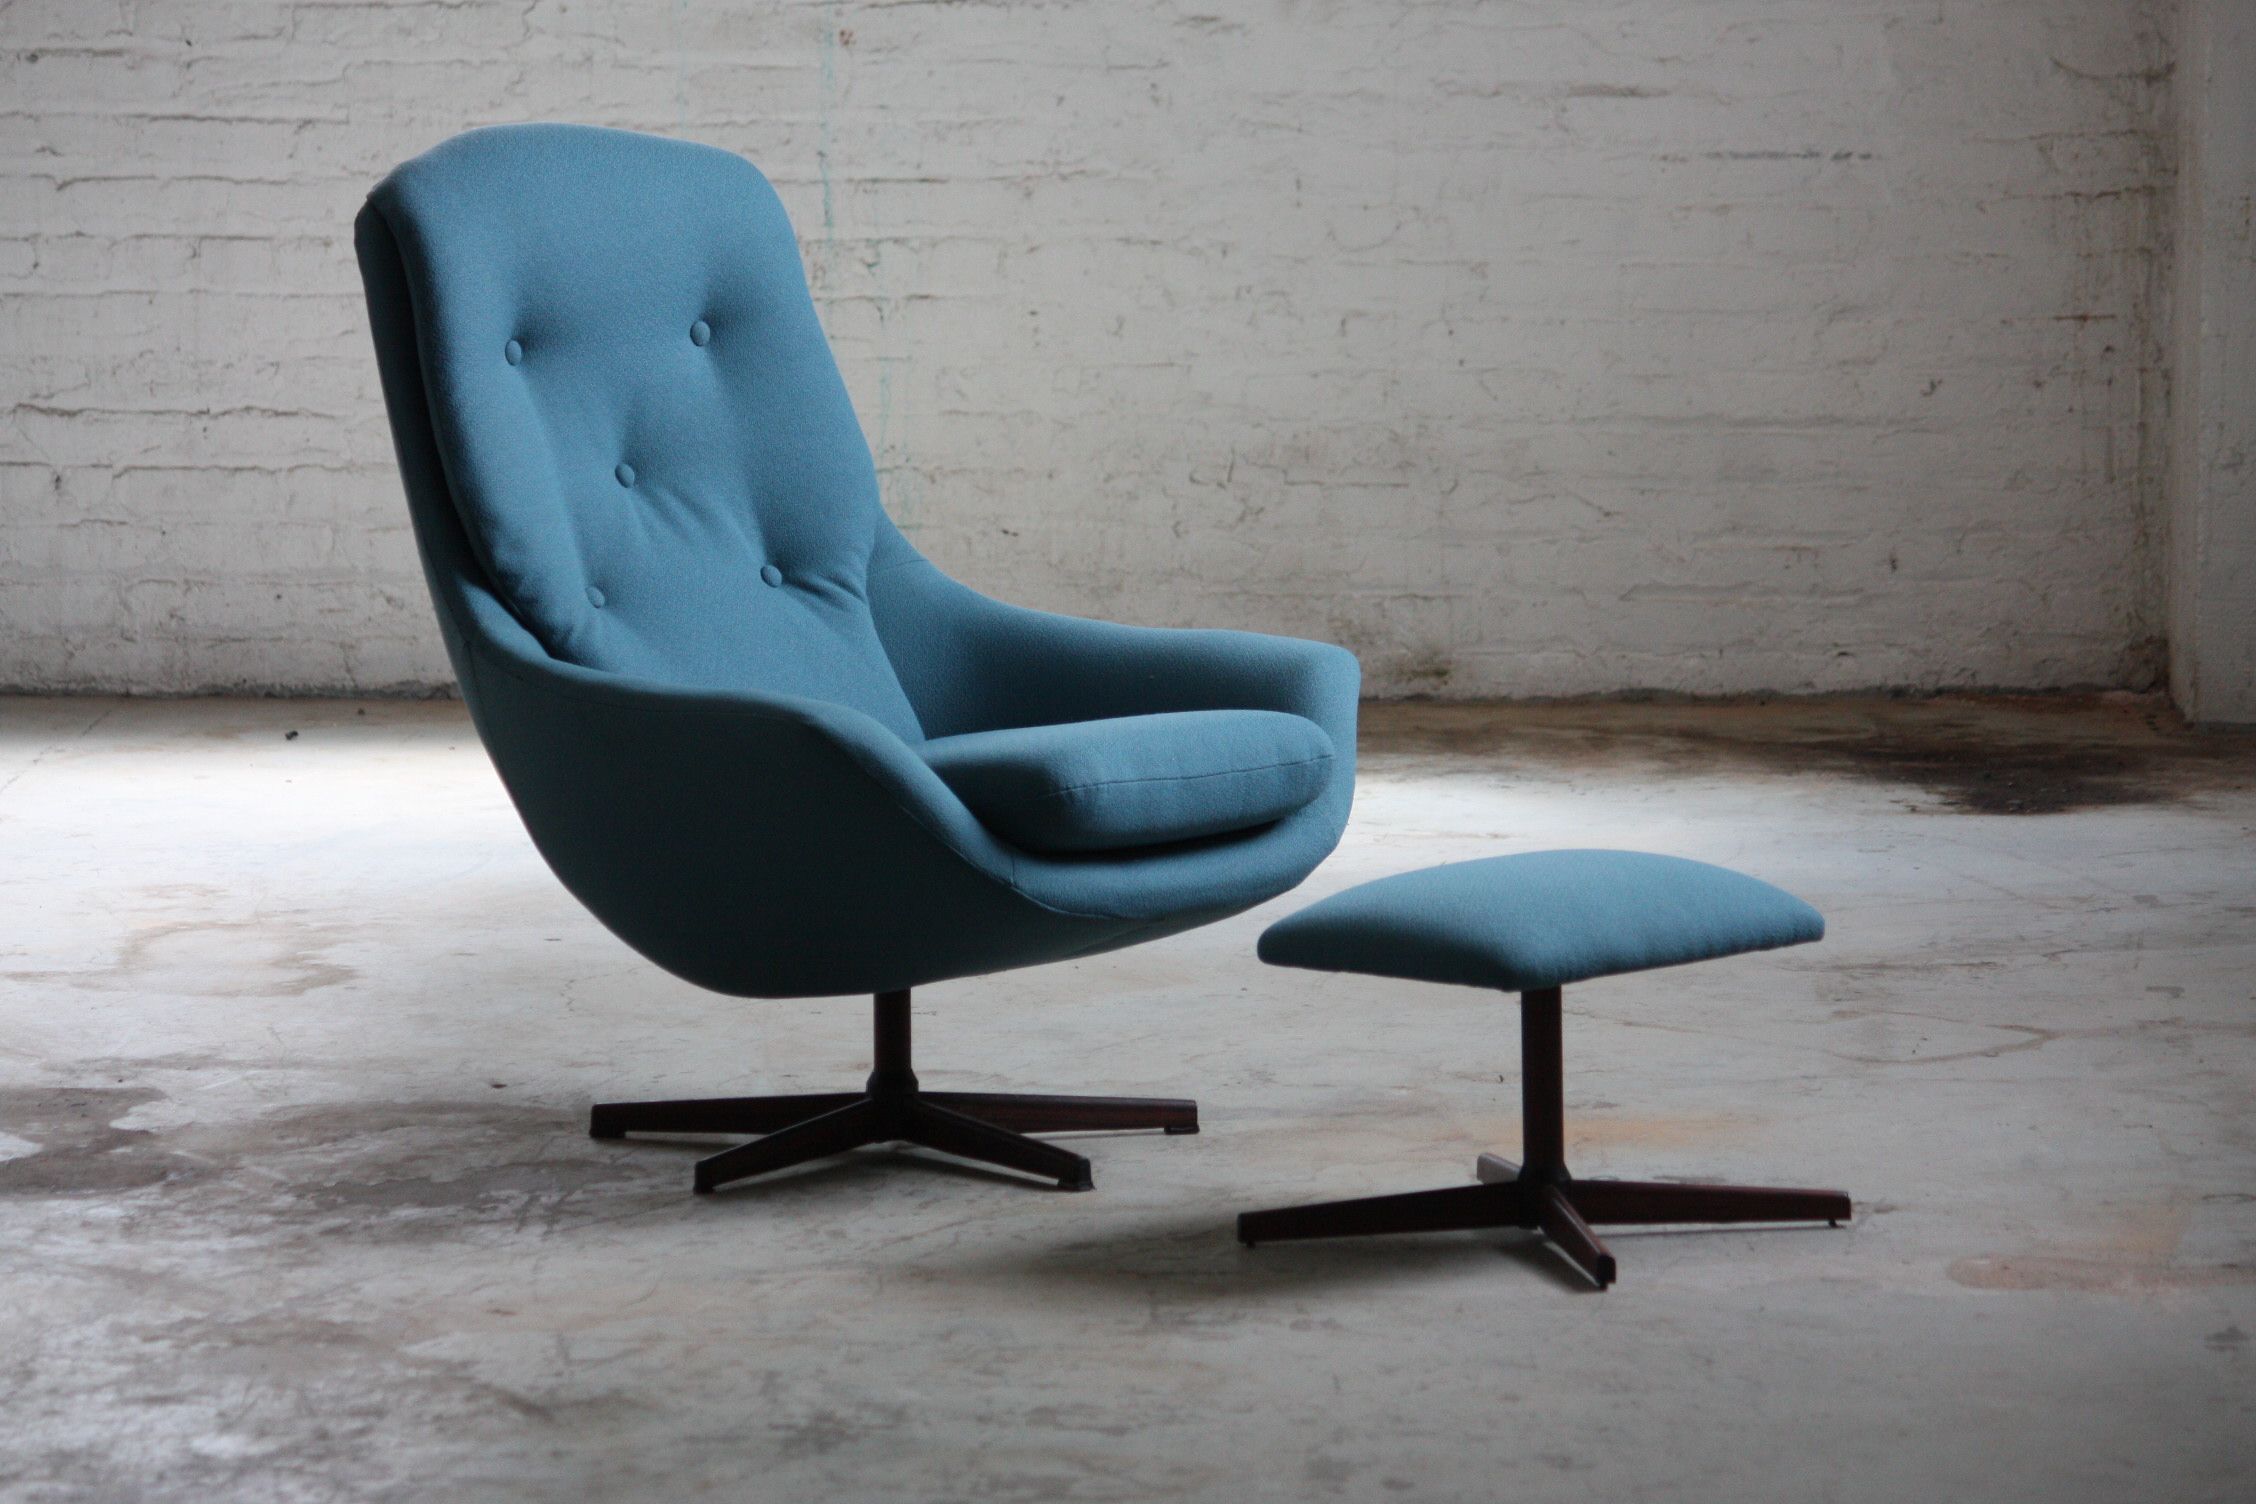 Подражание Eames lounge chair